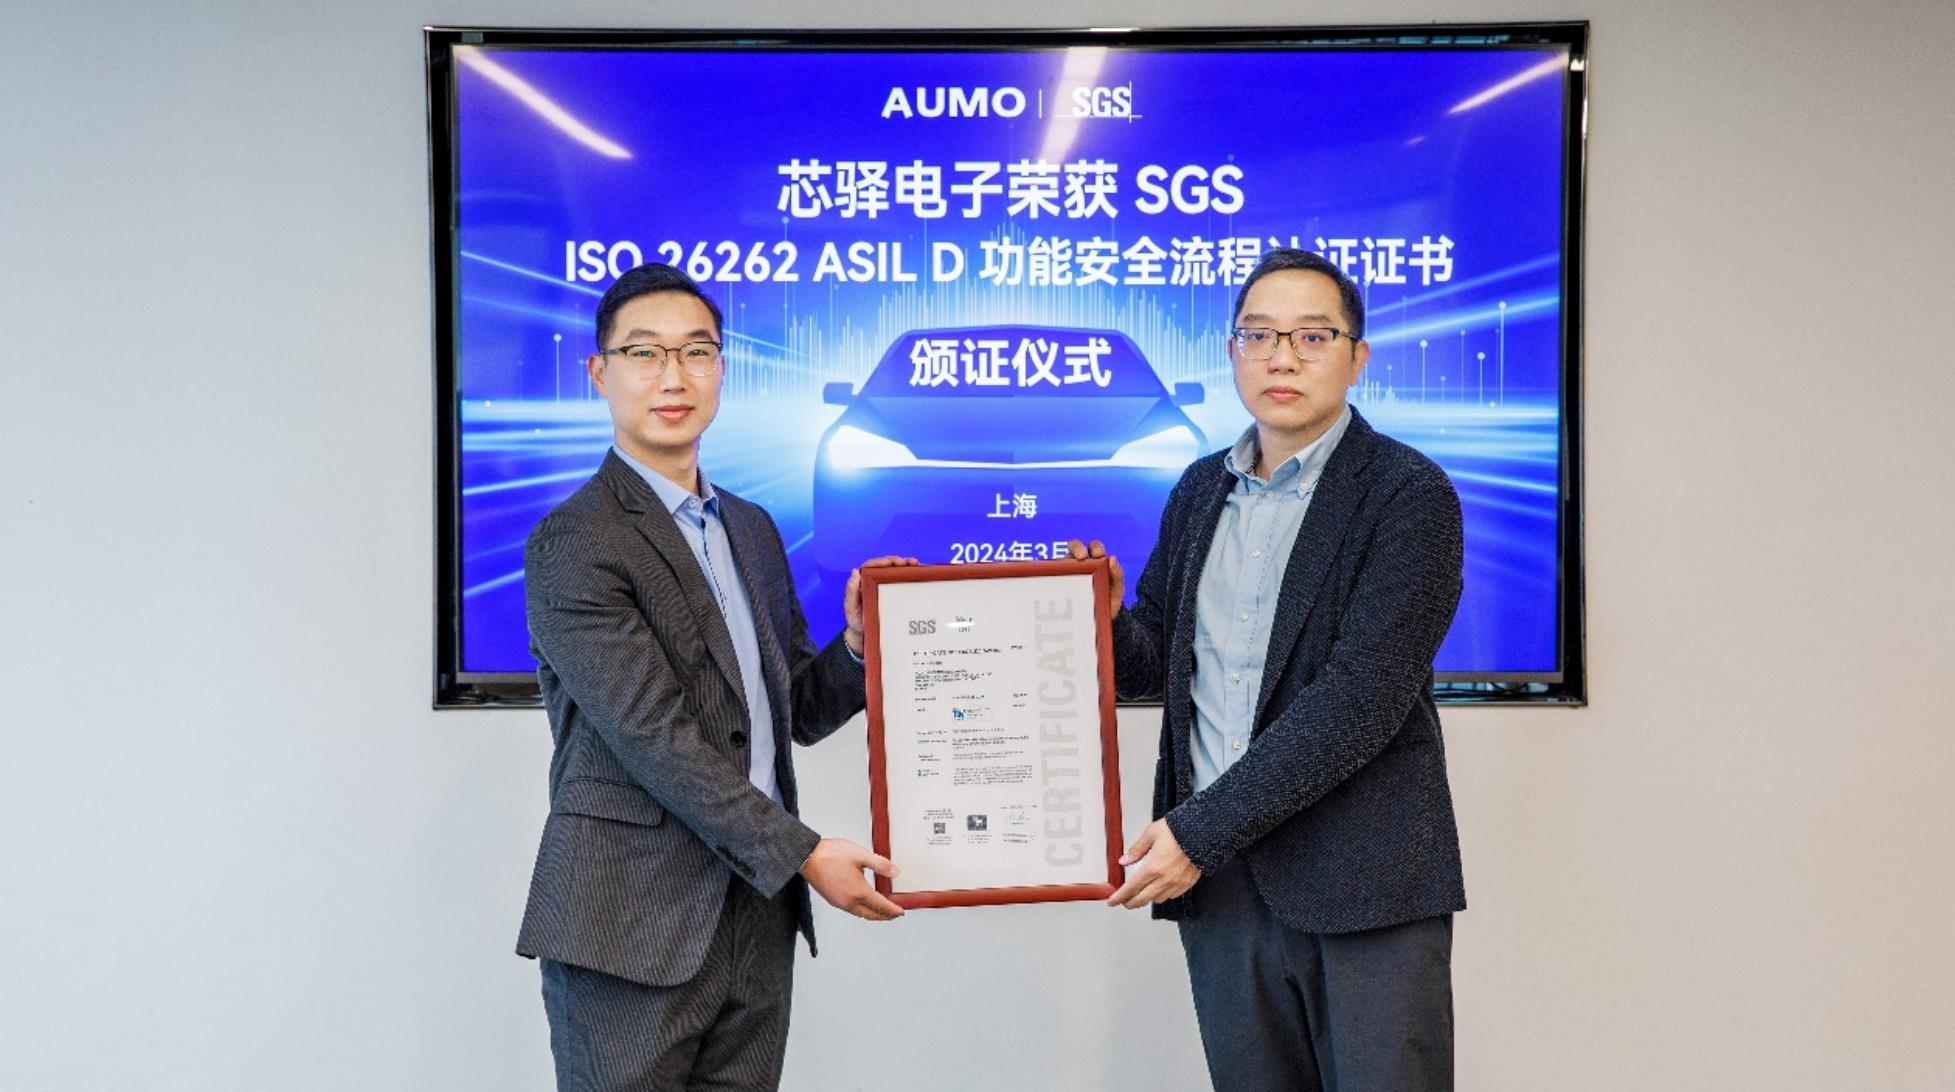 芯驿电子获ISO 26262汽车功能安全最高等级ASIL D认证证书